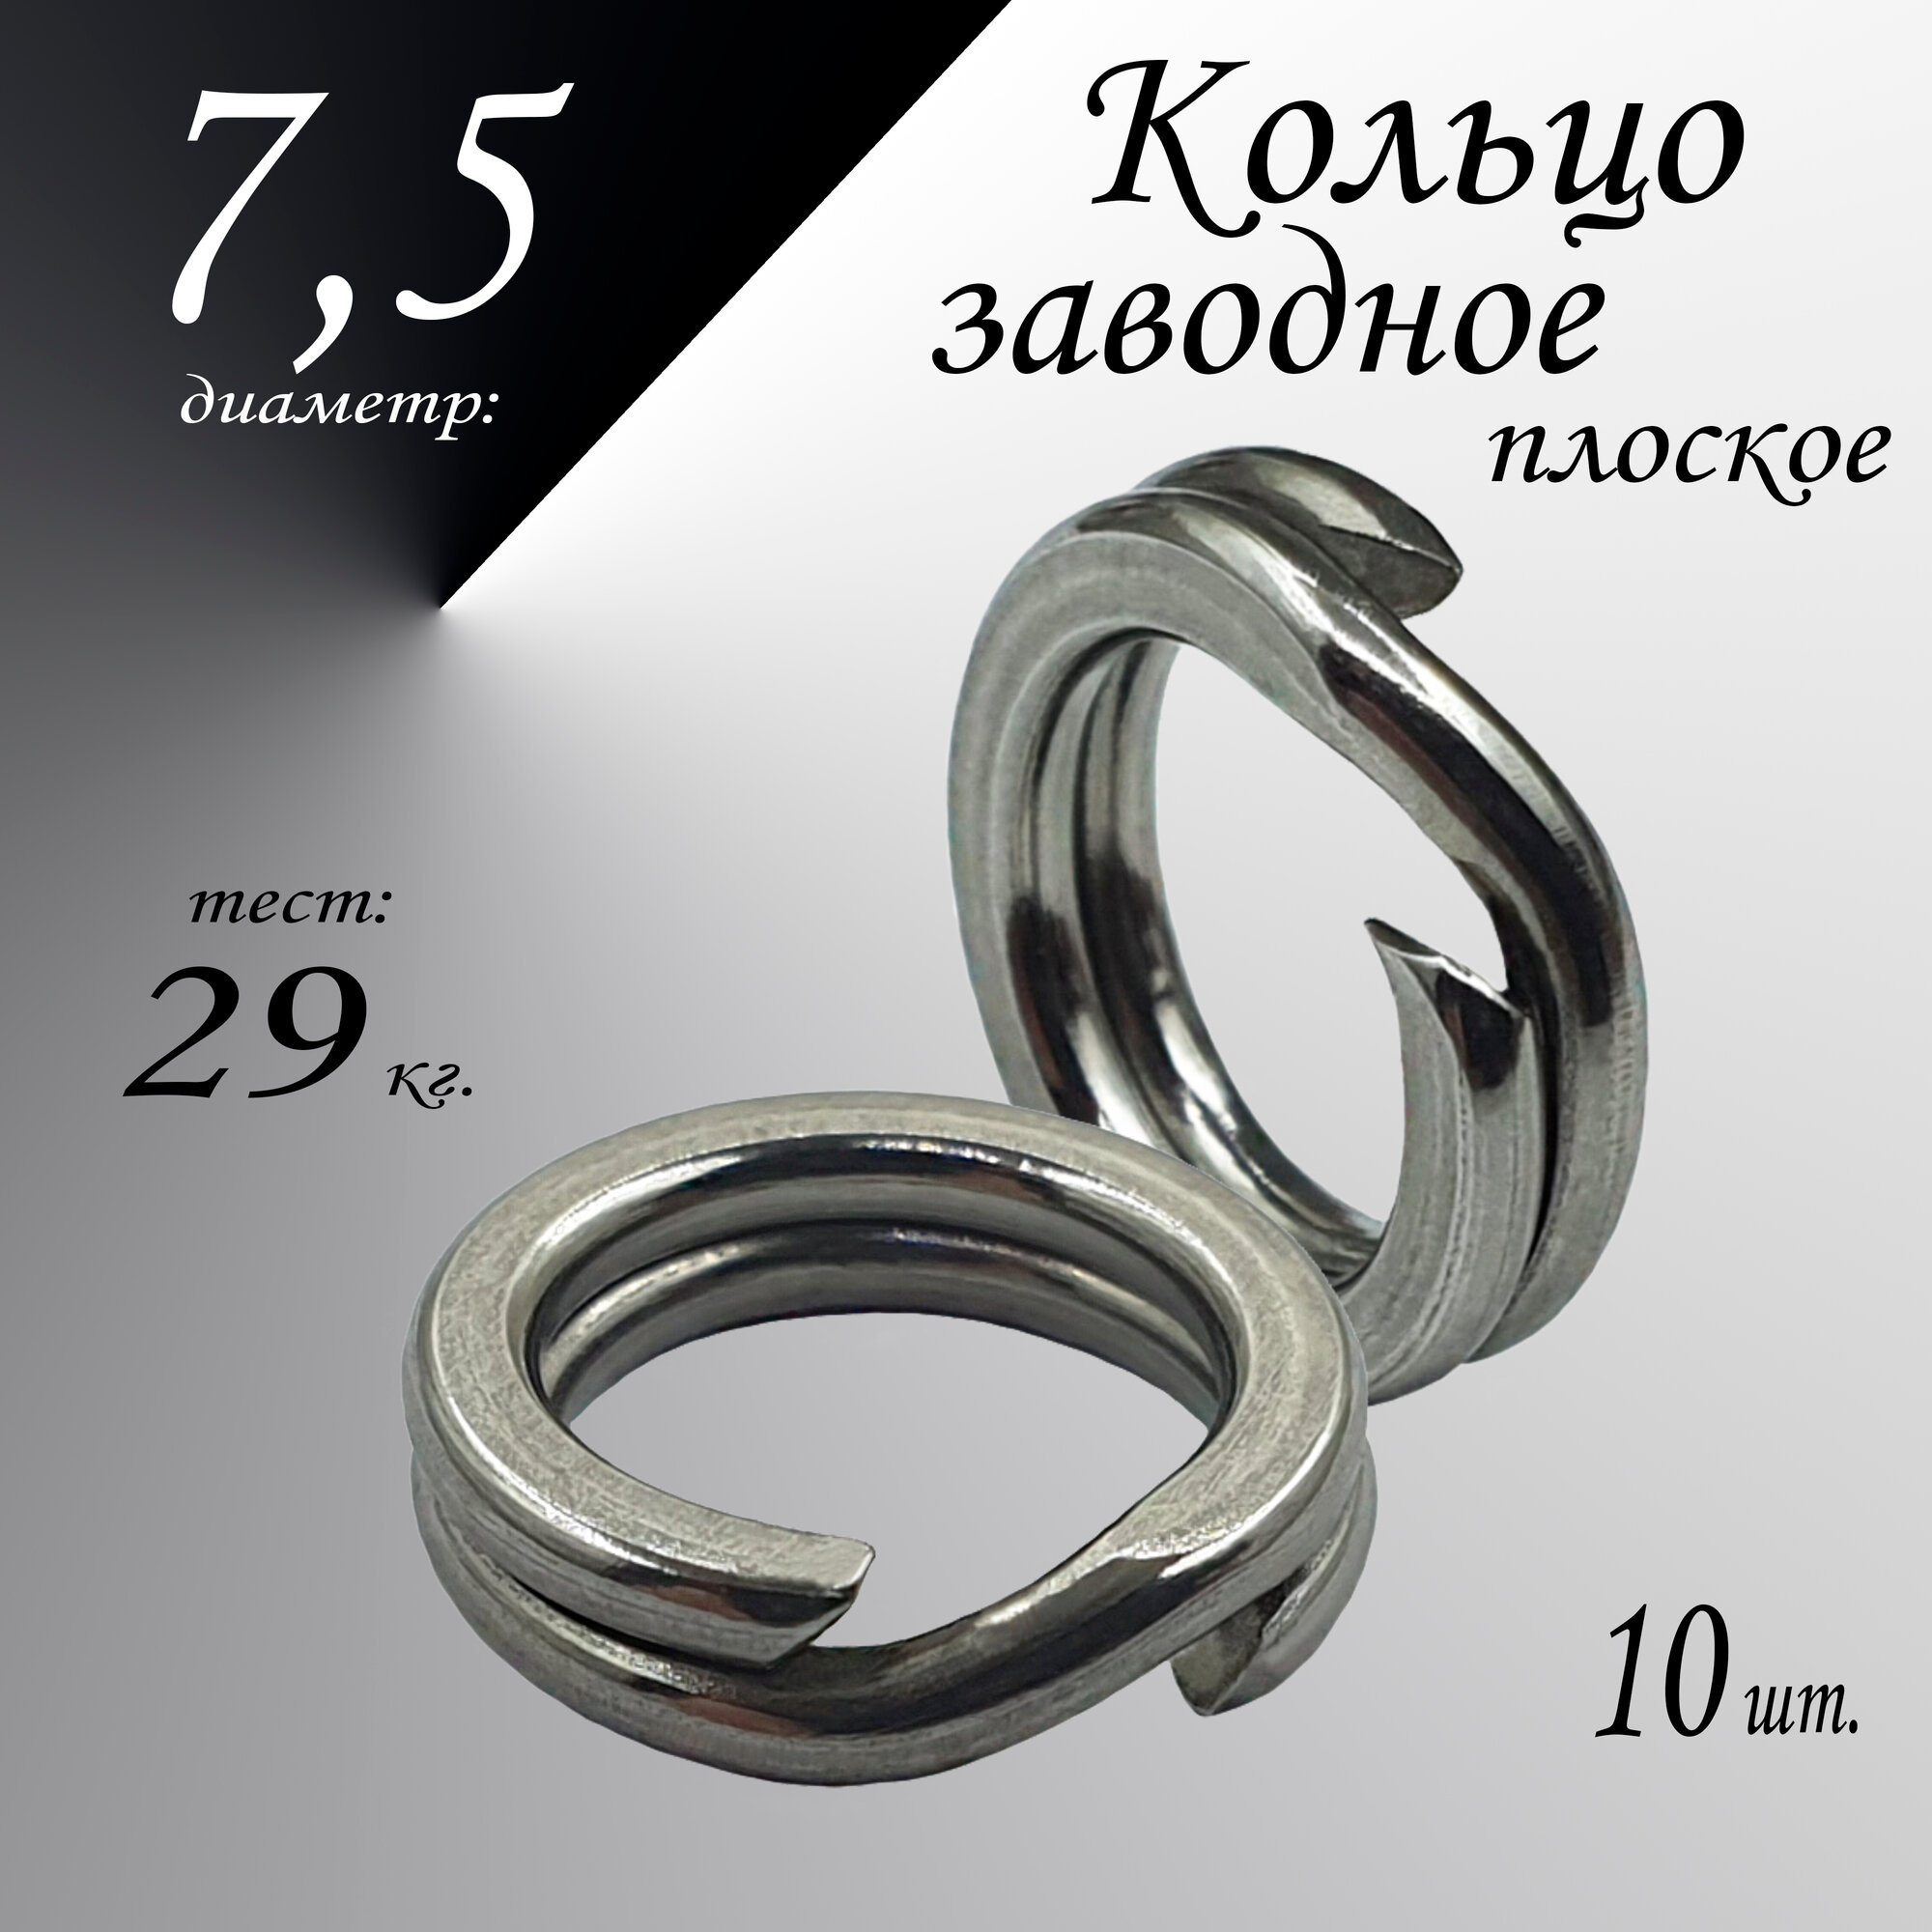 Заводное кольцо, плоское, диам-7,5 мм, тест 29 кг, (в уп. 10 шт.)